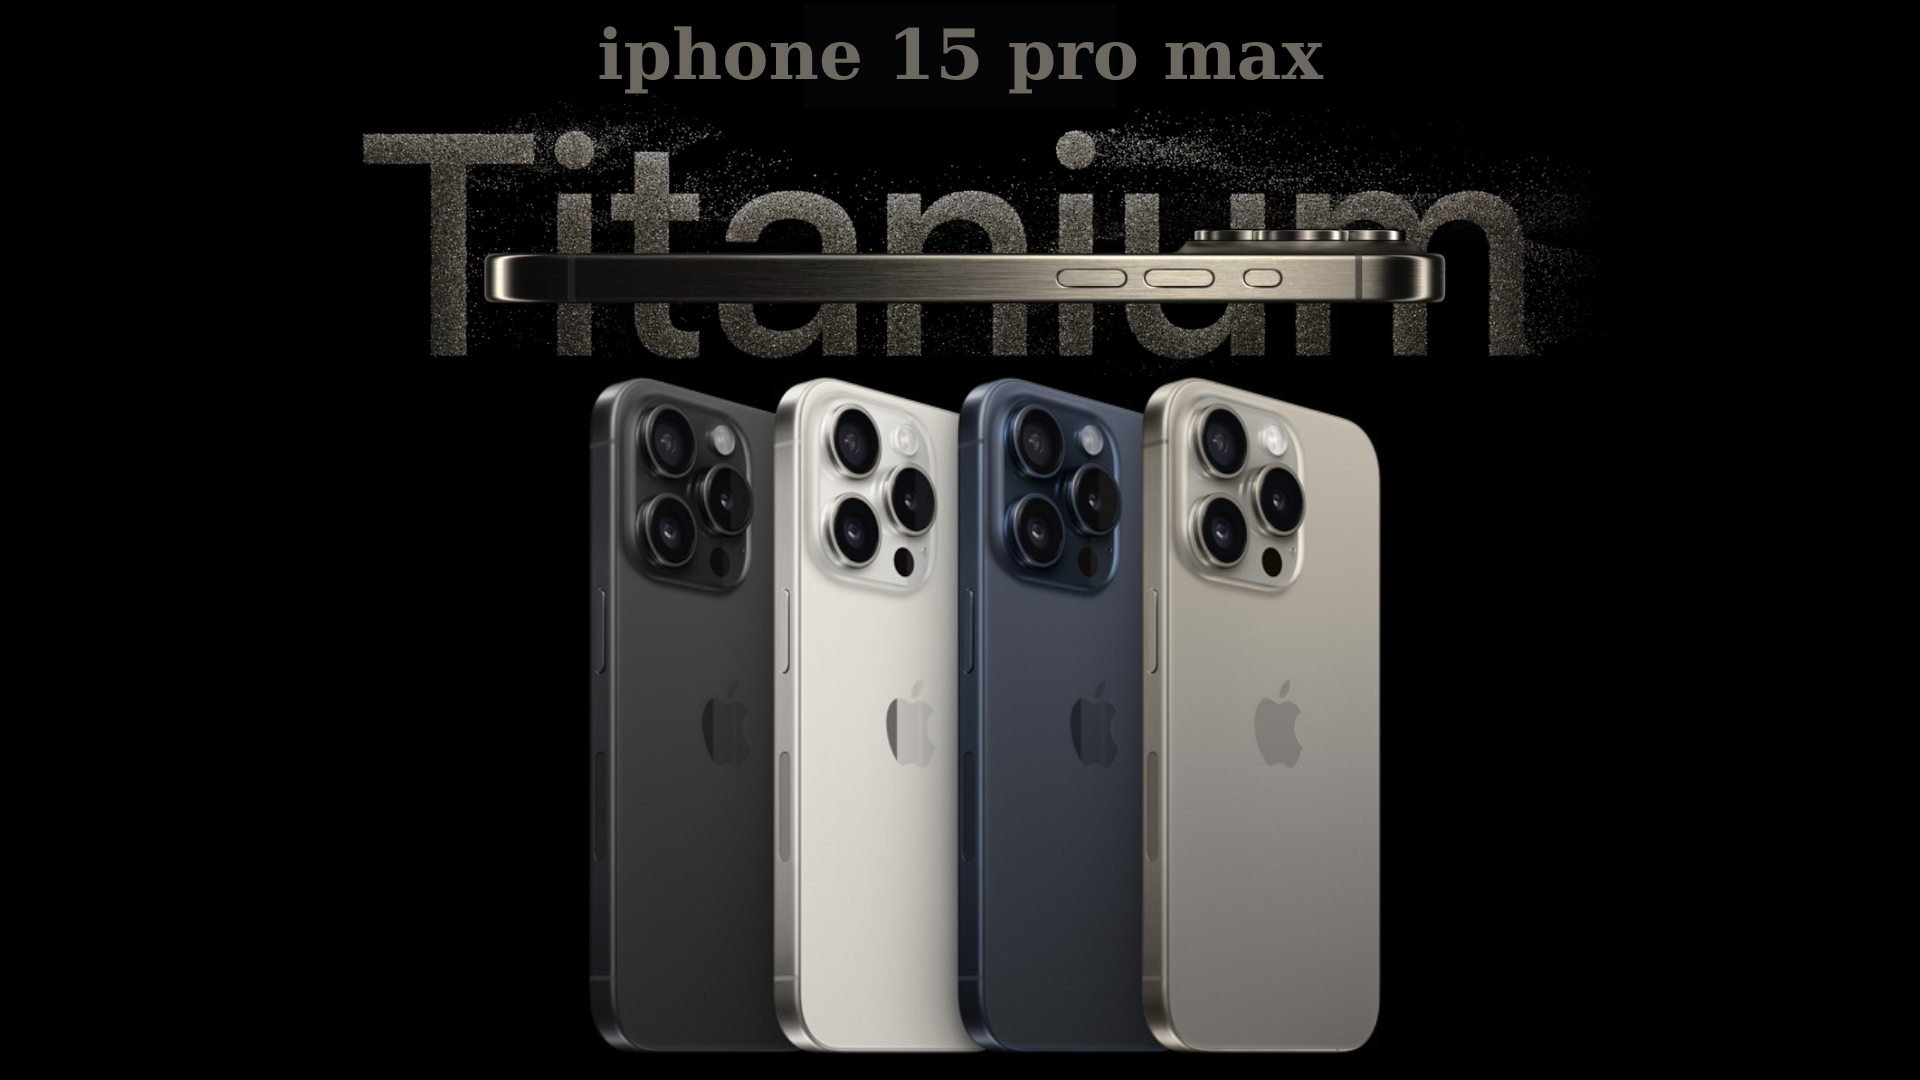 iPhone 15 Pro Max titannium